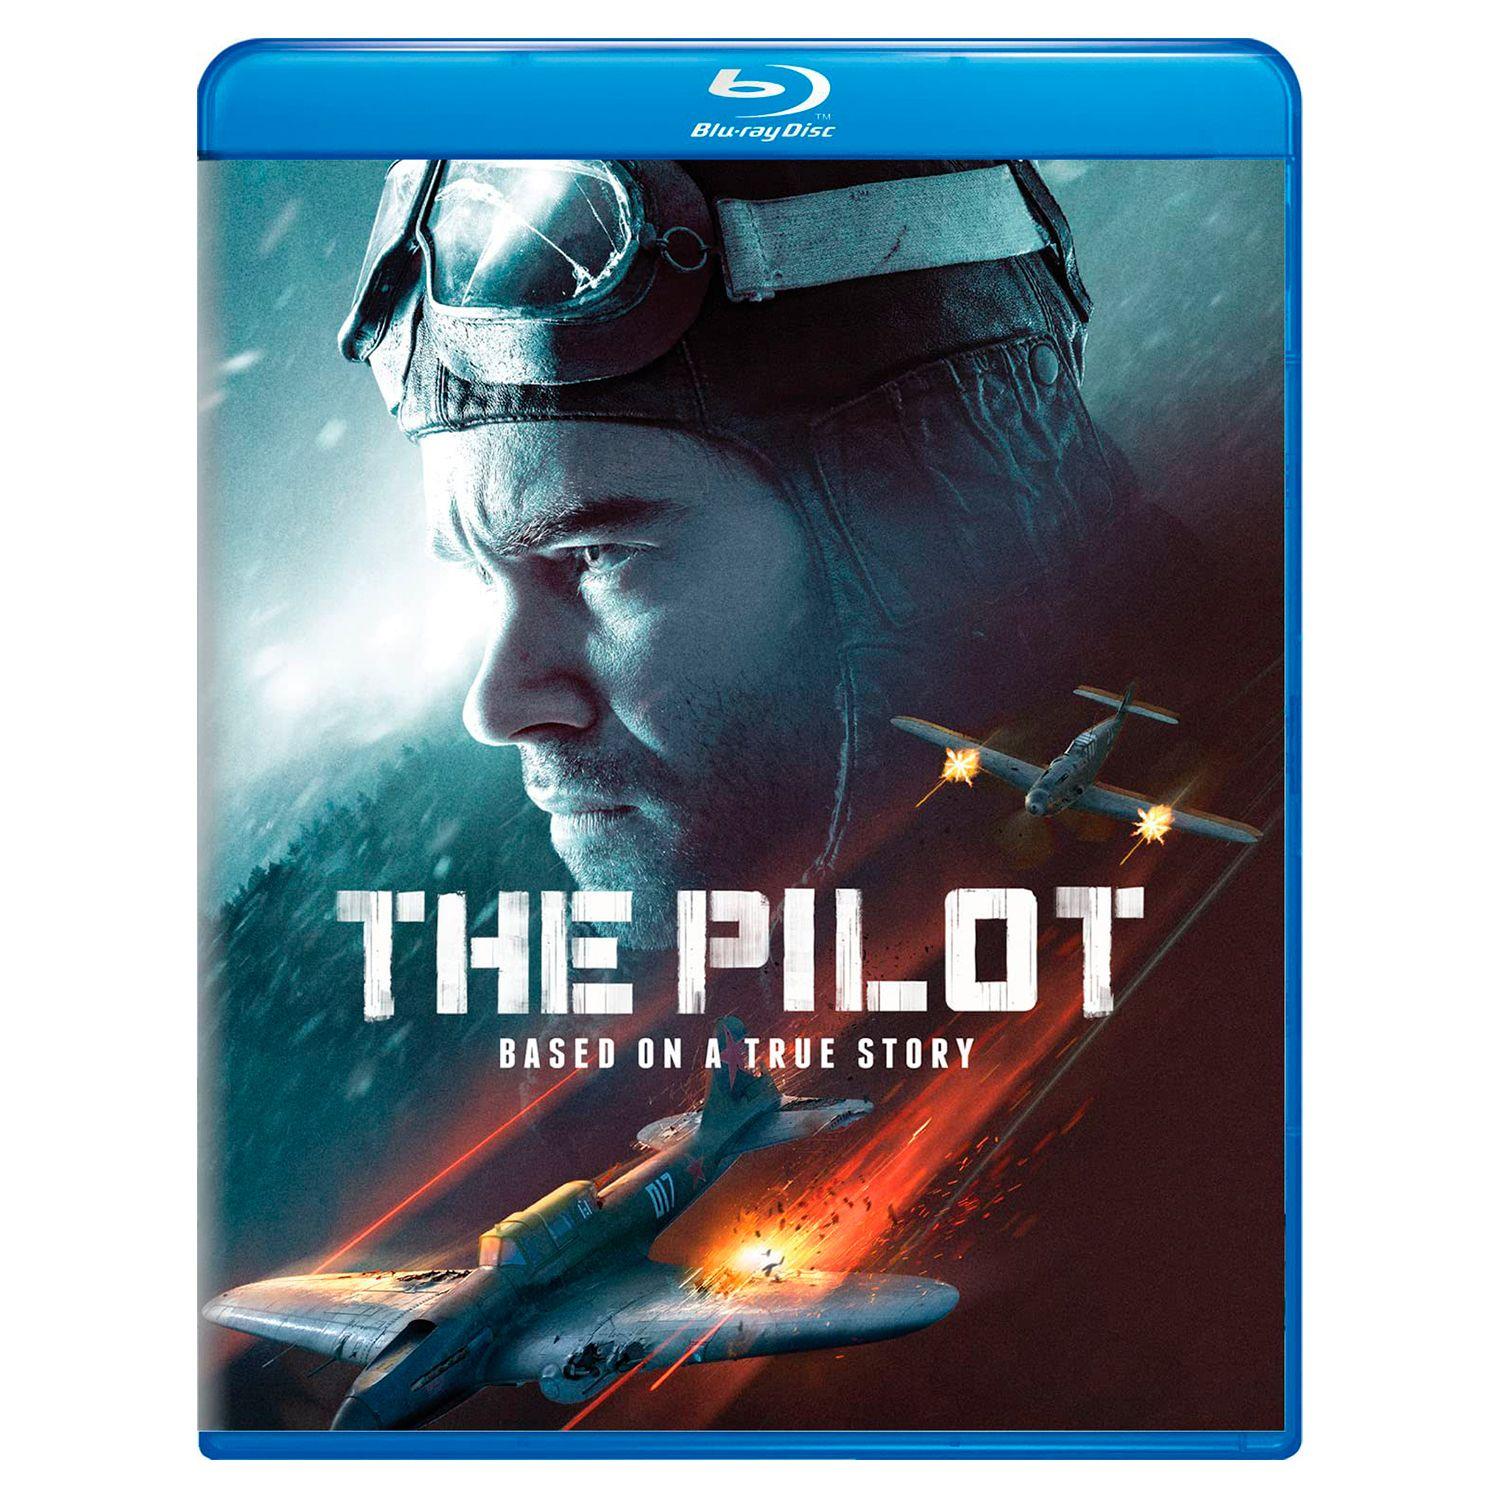 Летчик (2021) (Blu-ray)